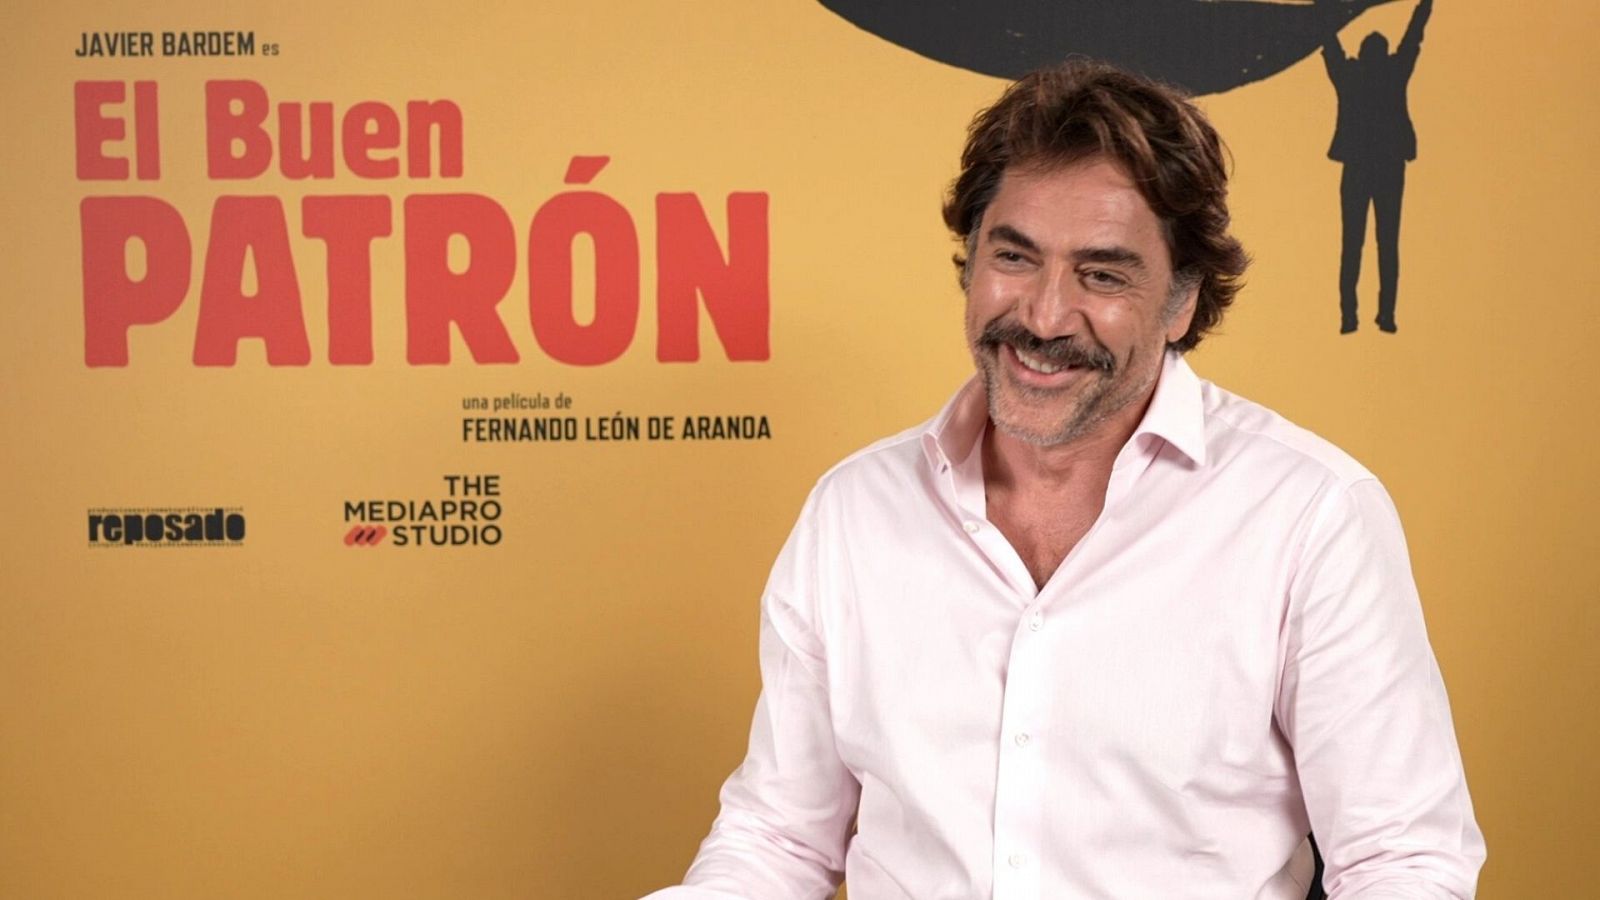 Somos cine: Javier Bardem: "Mi personaje es muy reconocible" | RTVE Play